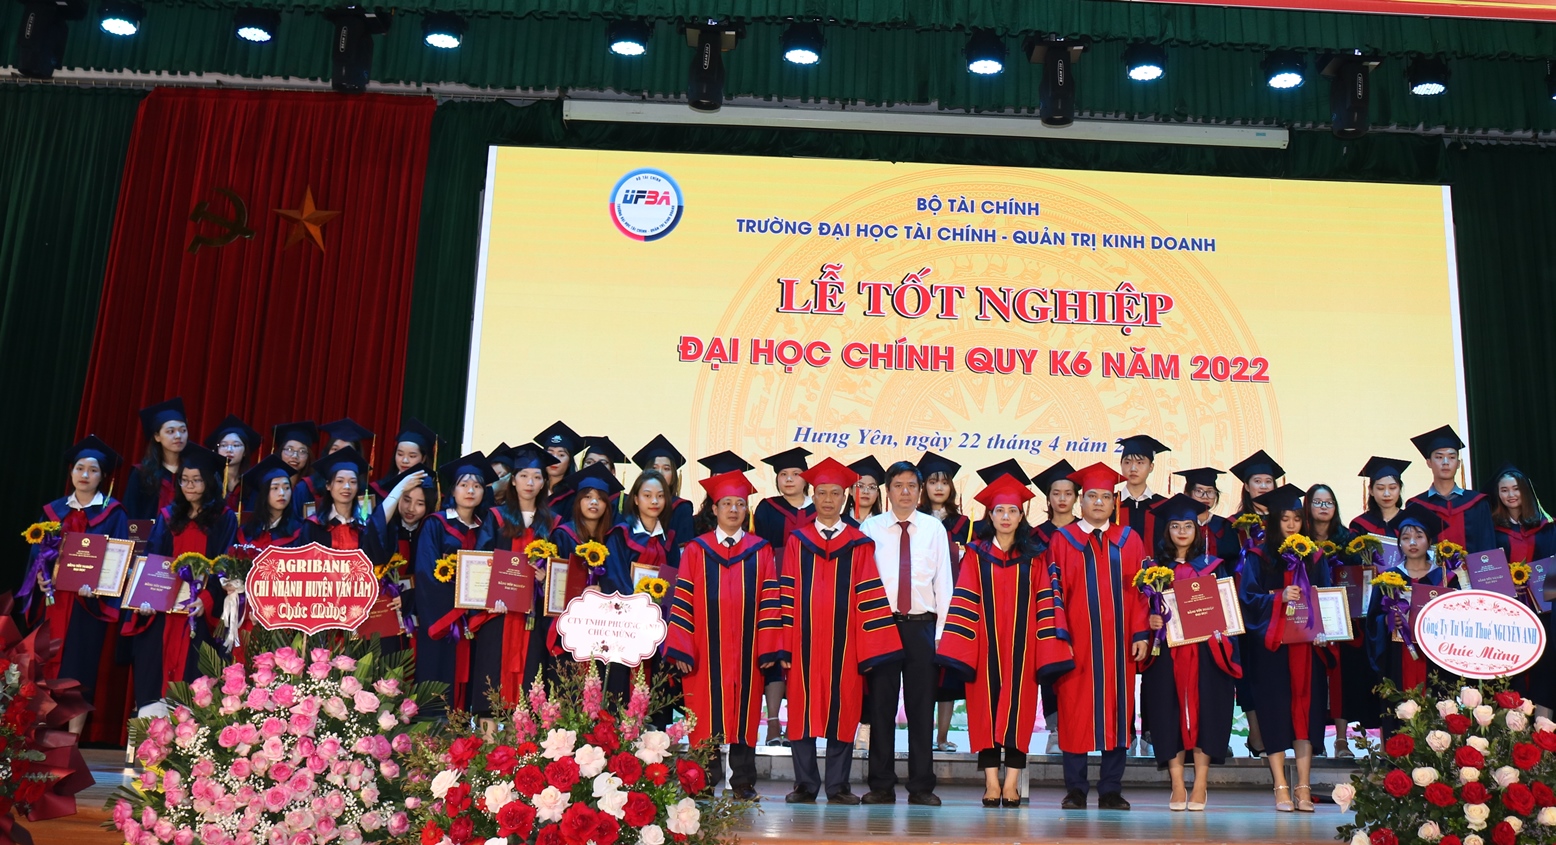 Lễ tốt nghiệp Đại học chính quy K6 ( Khóa học 2018 - 2022)